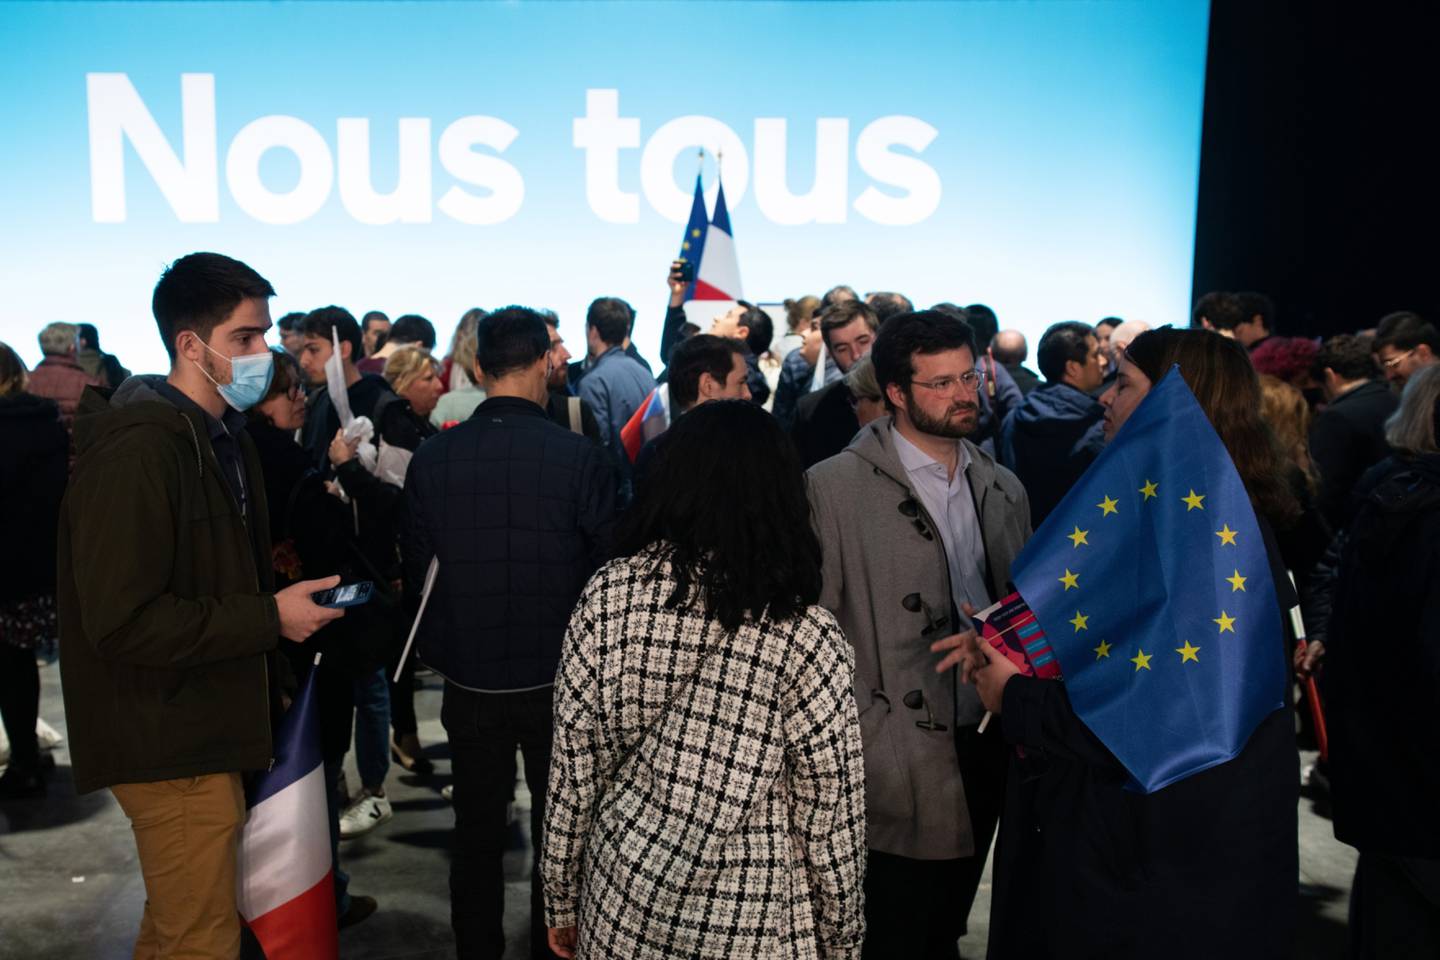 Macron obteve cerca de 29% dos votos em comparação com cerca de 24% para Le Pen, de acordo com projeções de pesquisas